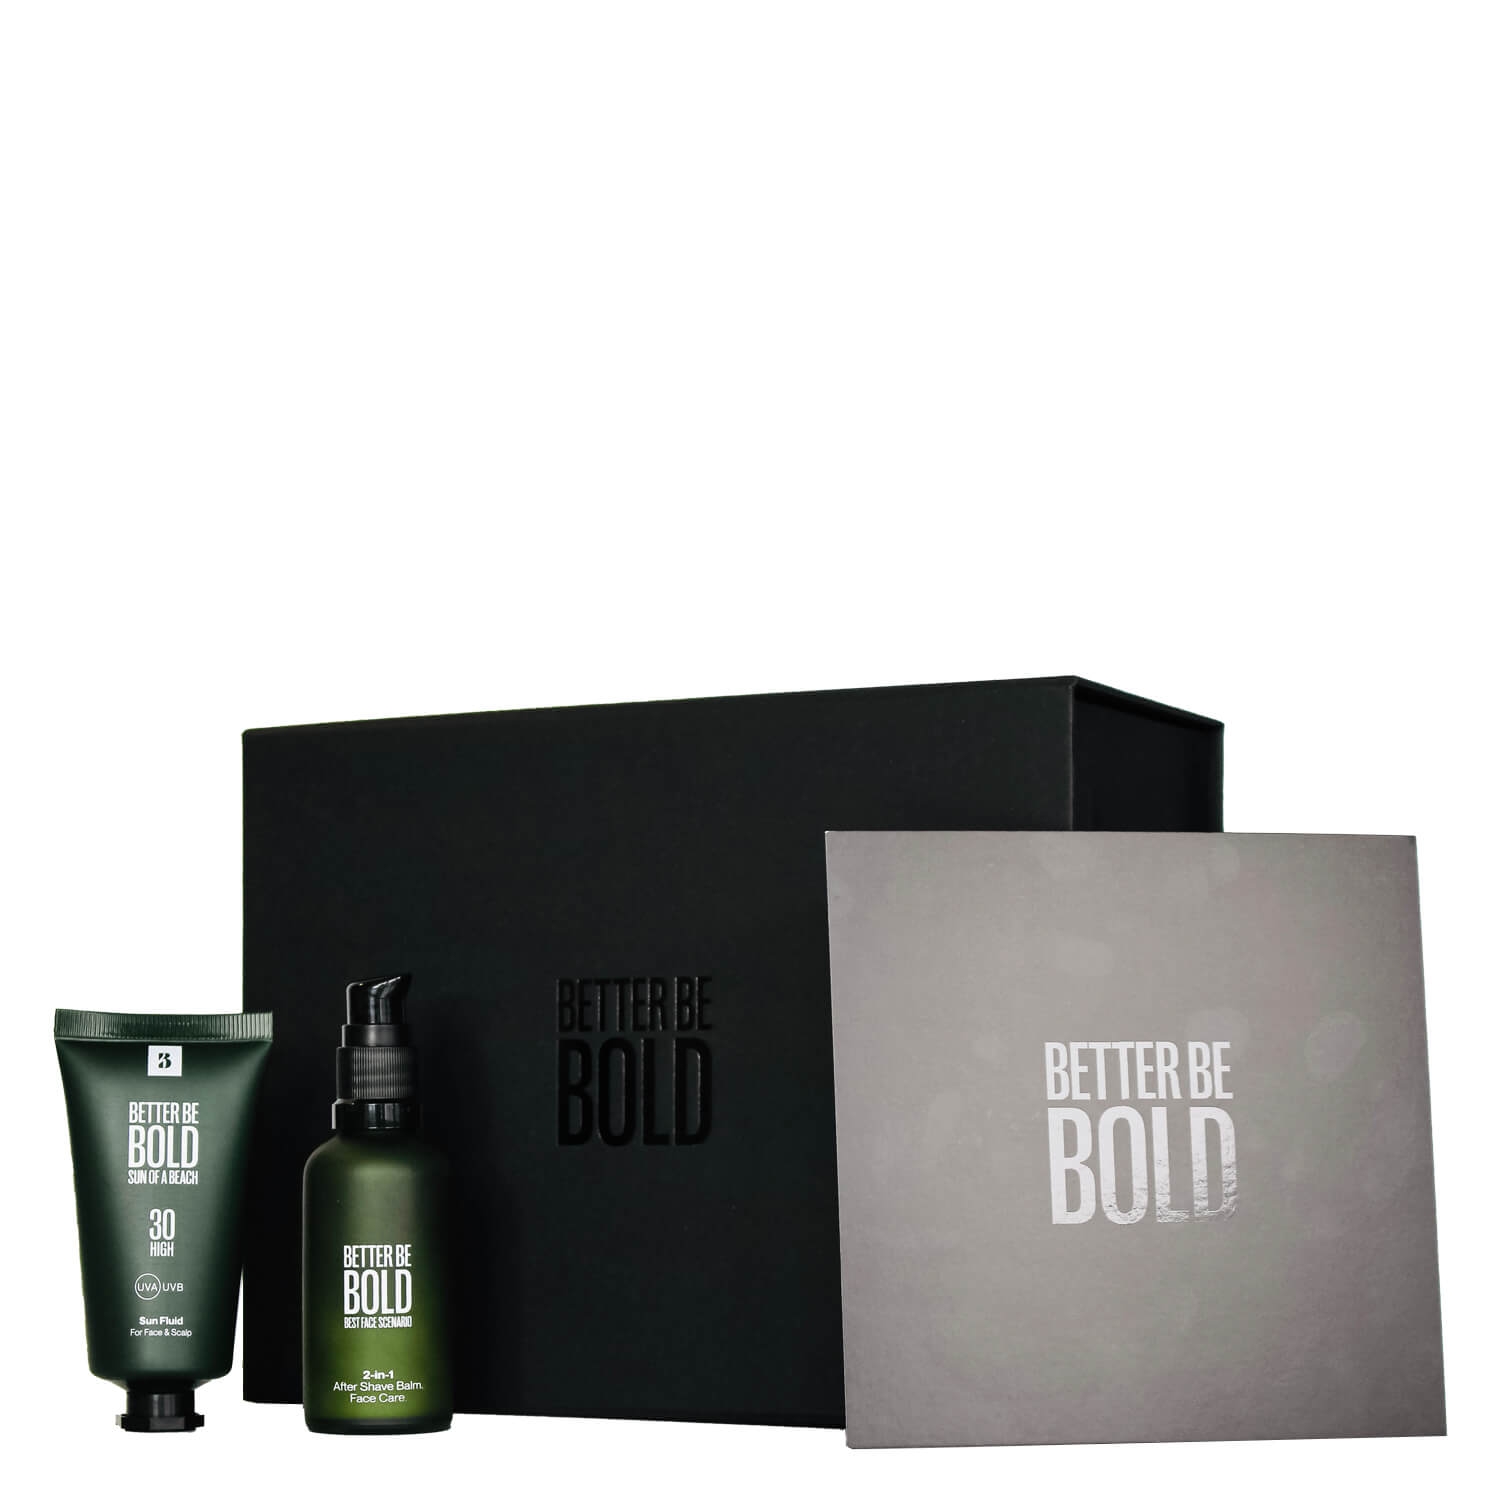 Produktbild von BETTER BE BOLD - Geschenkbox für glückliche Männer mit UV-Schutz